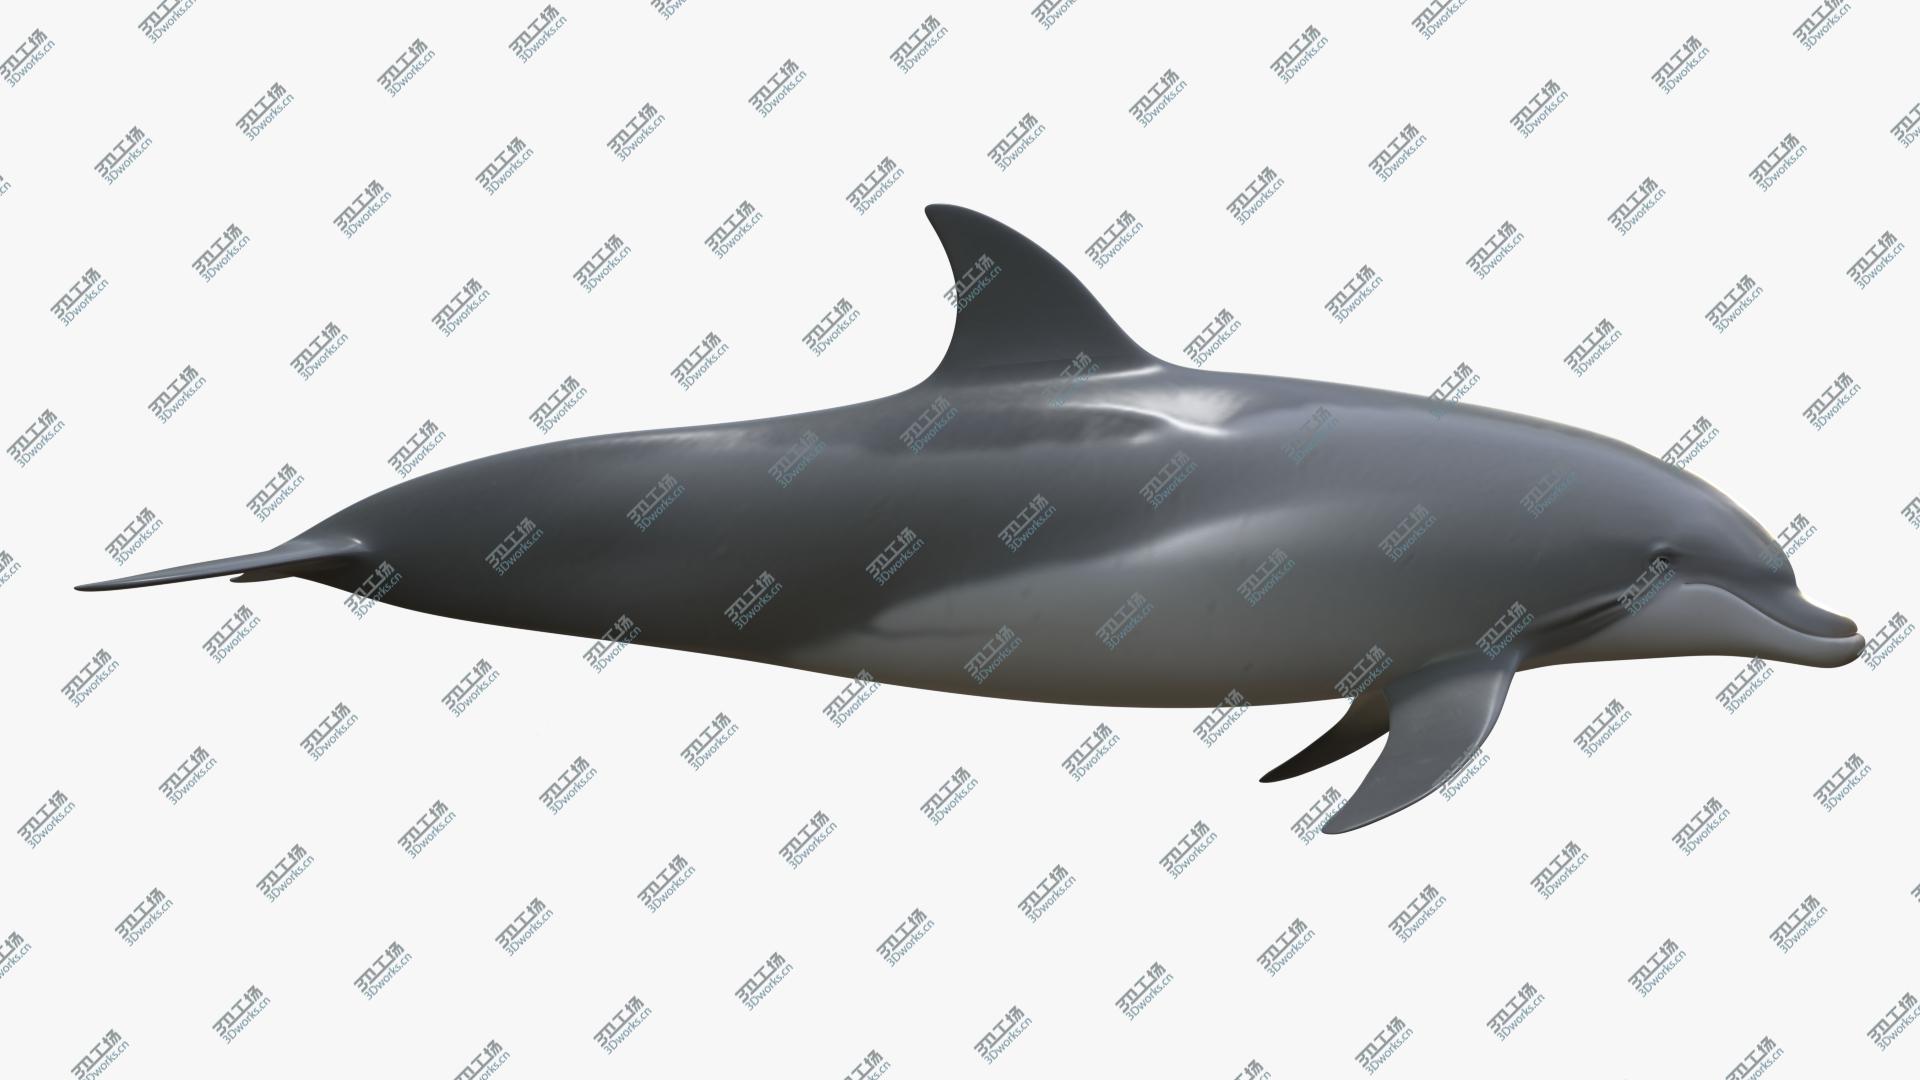 images/goods_img/202104021/3D Beautiful Common Bottlenose Dolphin model/5.jpg